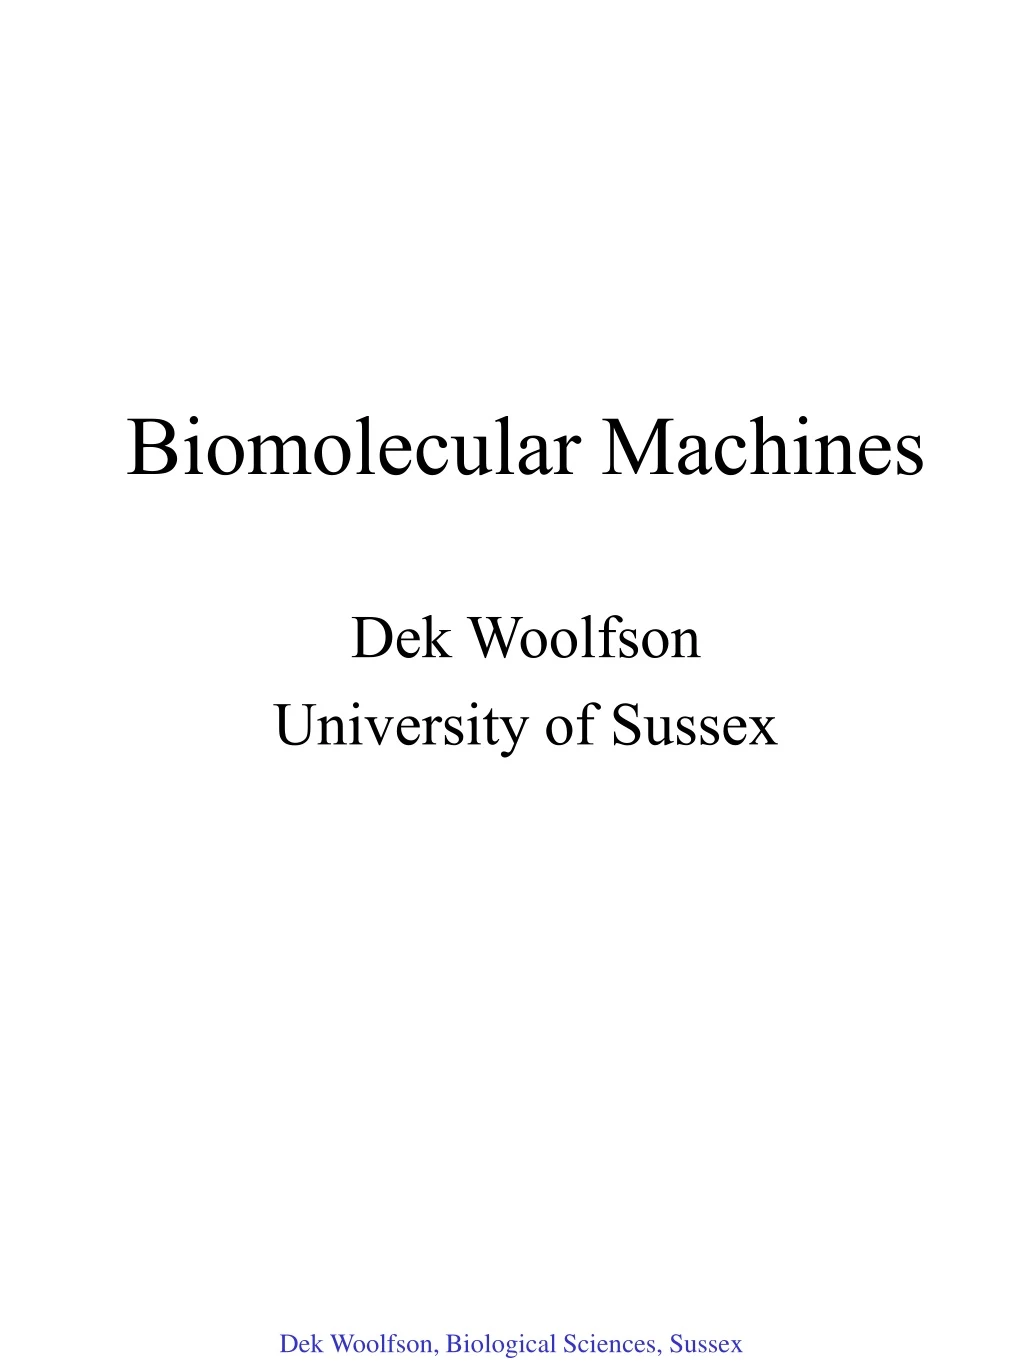 biomolecular machines